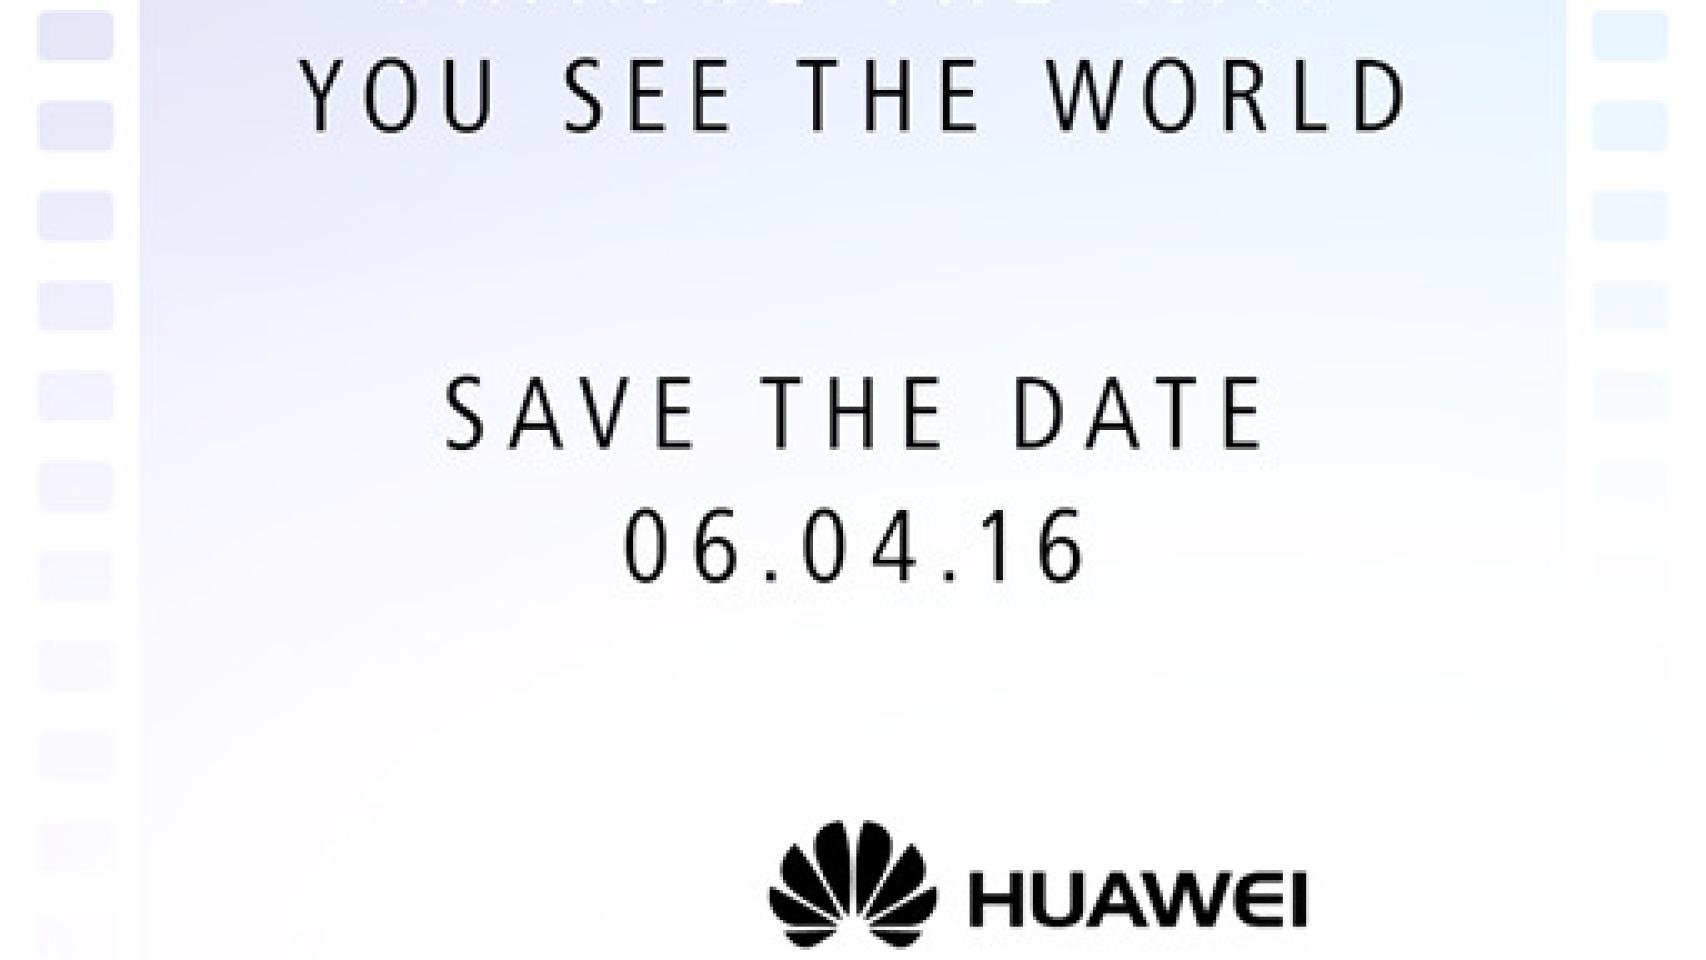 El Huawei P9 se presentará finalmente el 6 de abril en Londres